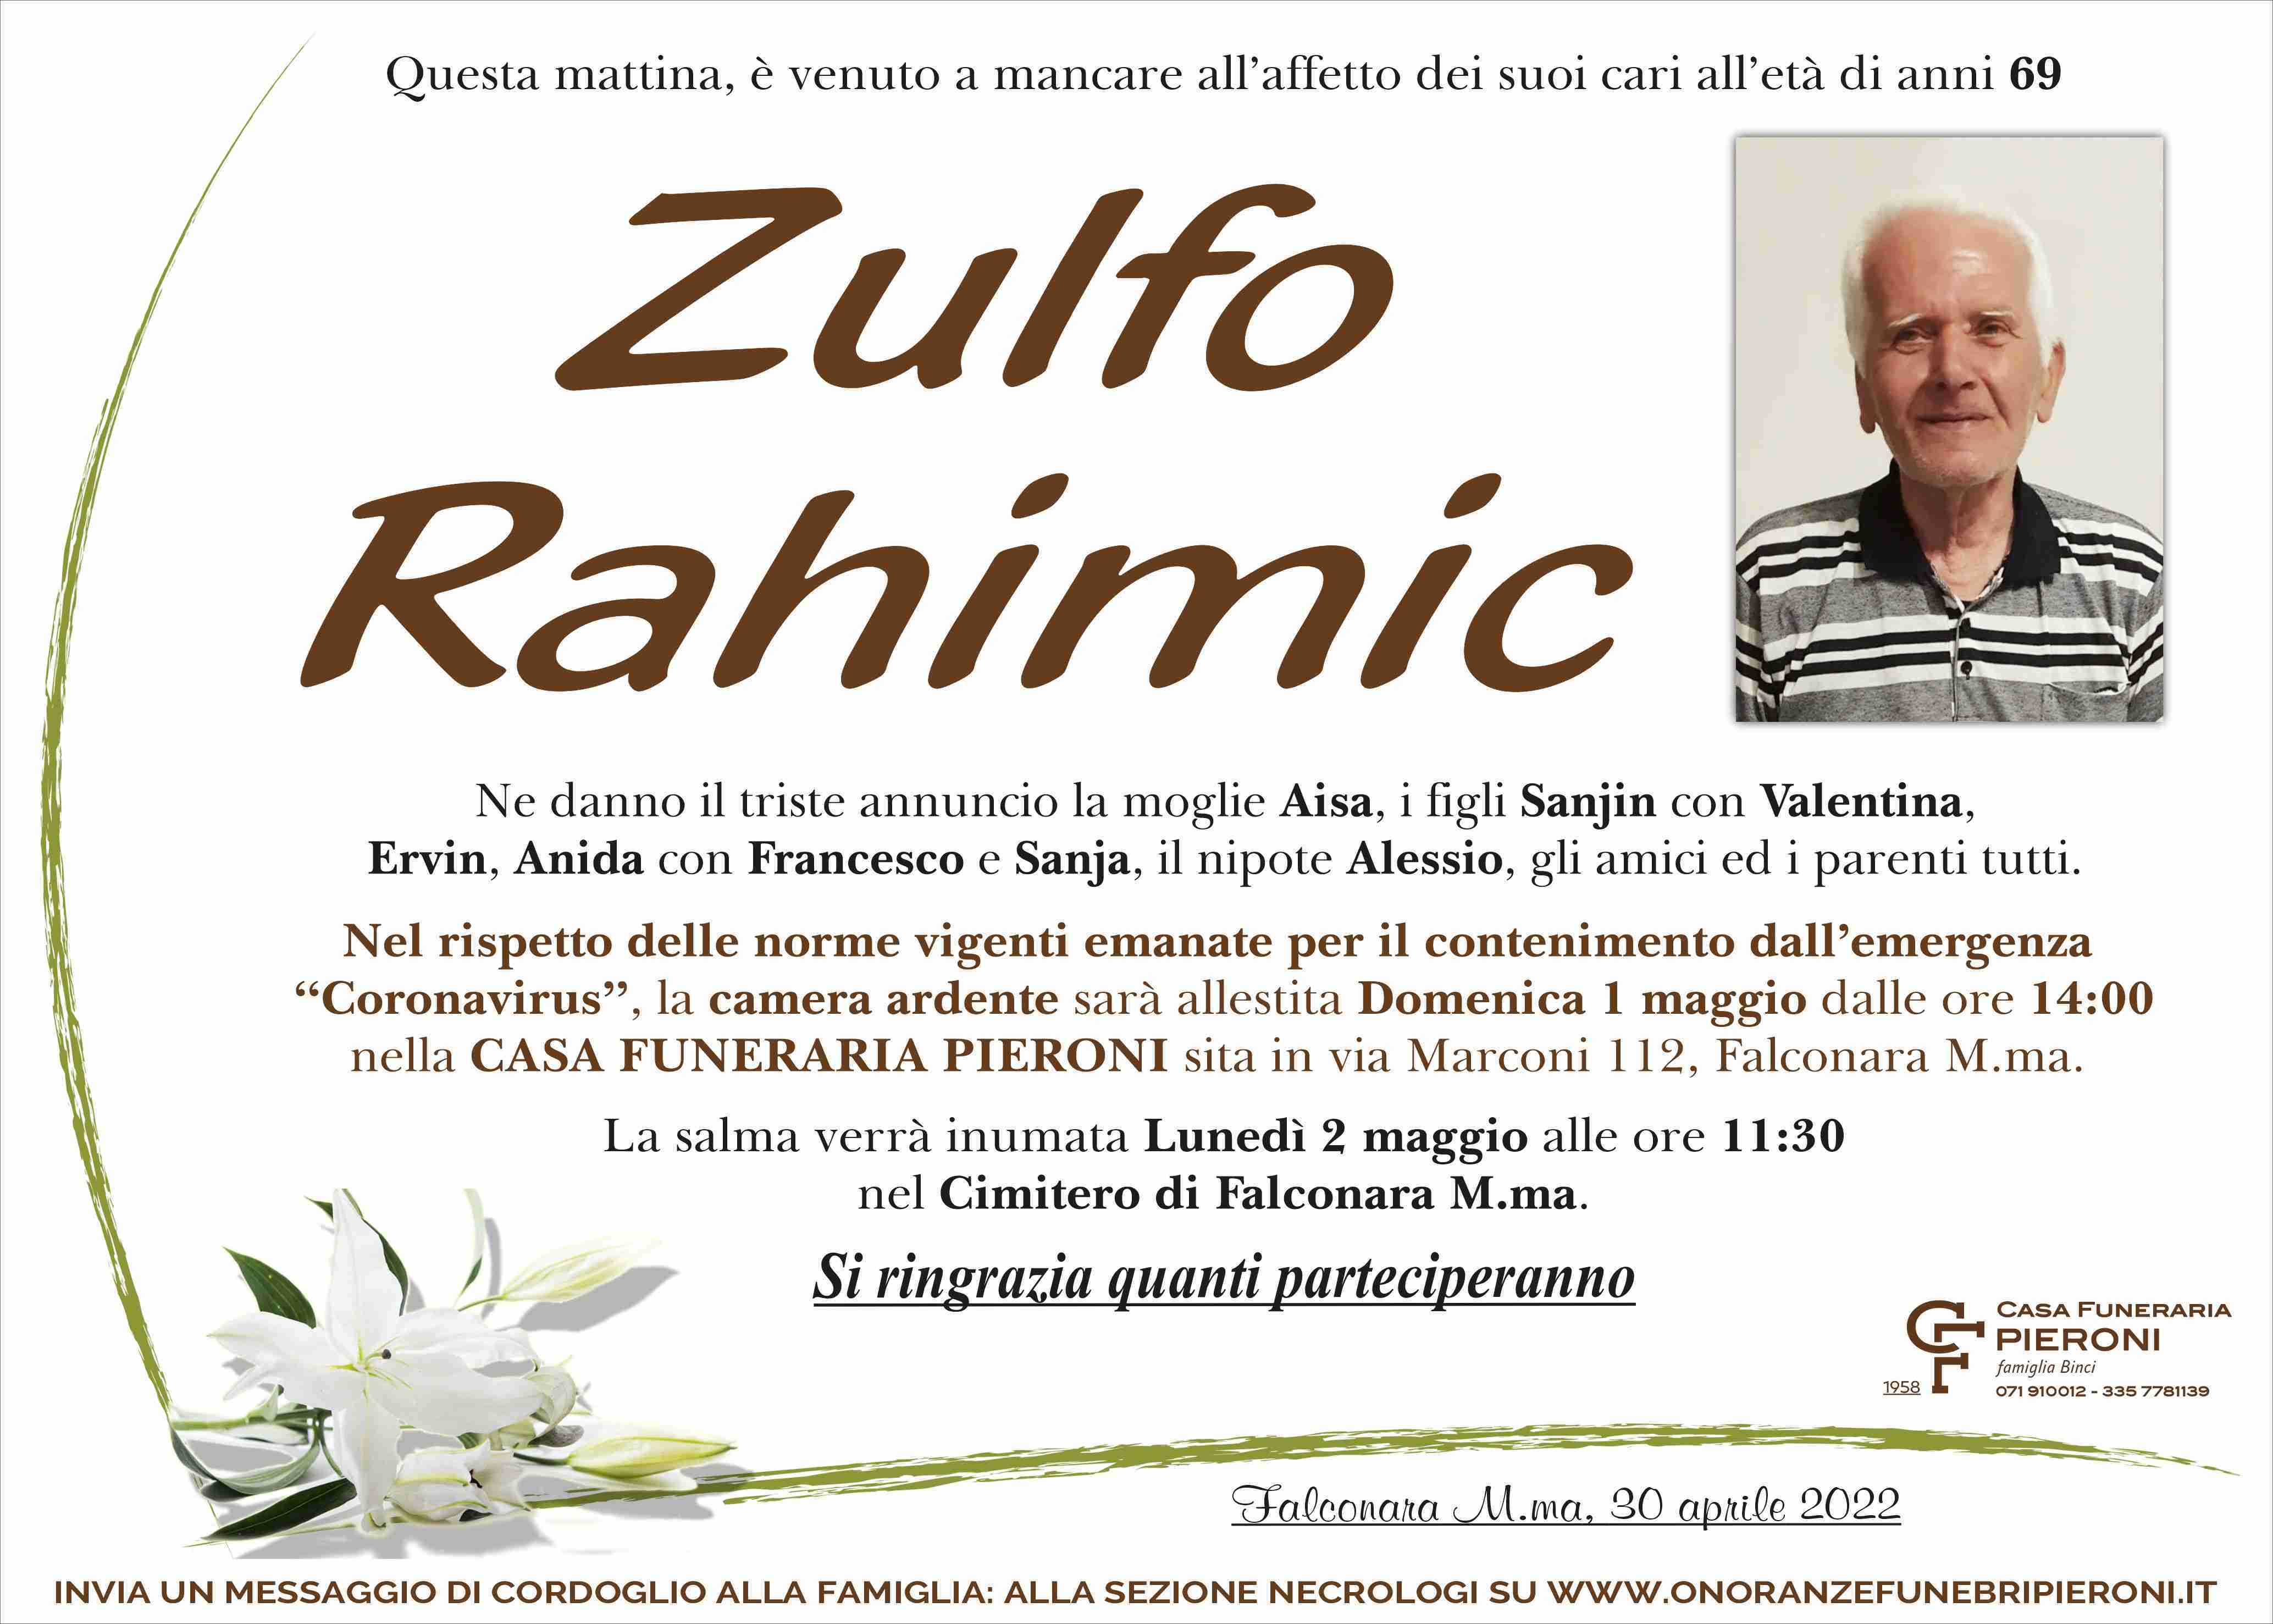 Zulfo Rahimic